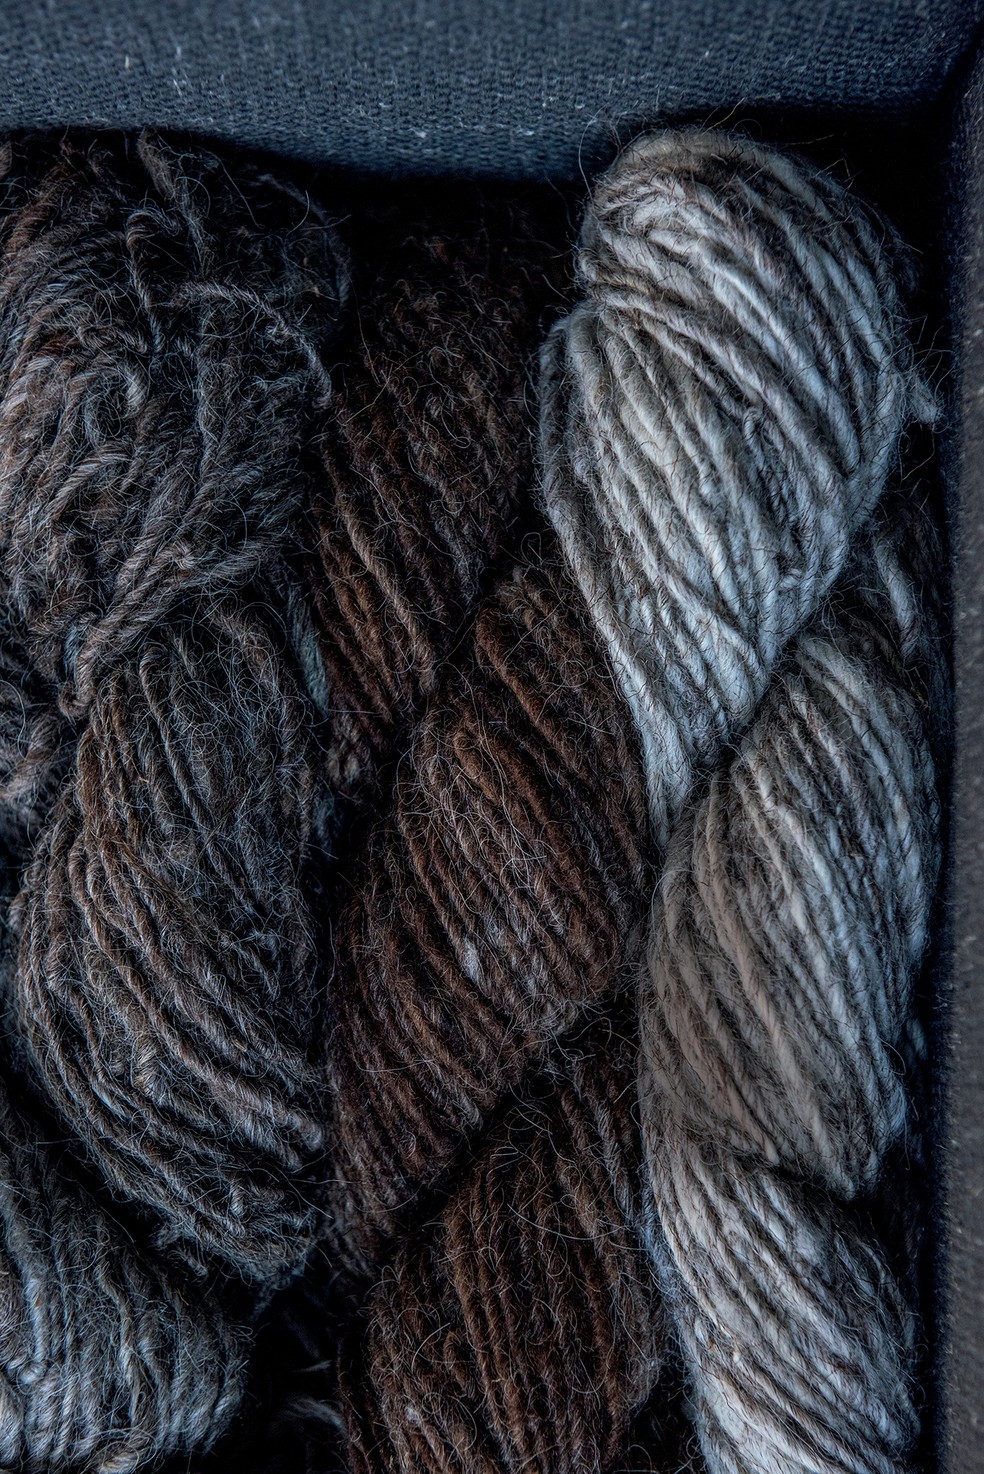 Diferentes matizes da lã naturalmente colorida, típica das ovelhas caracul — Foto: Letícia Remião